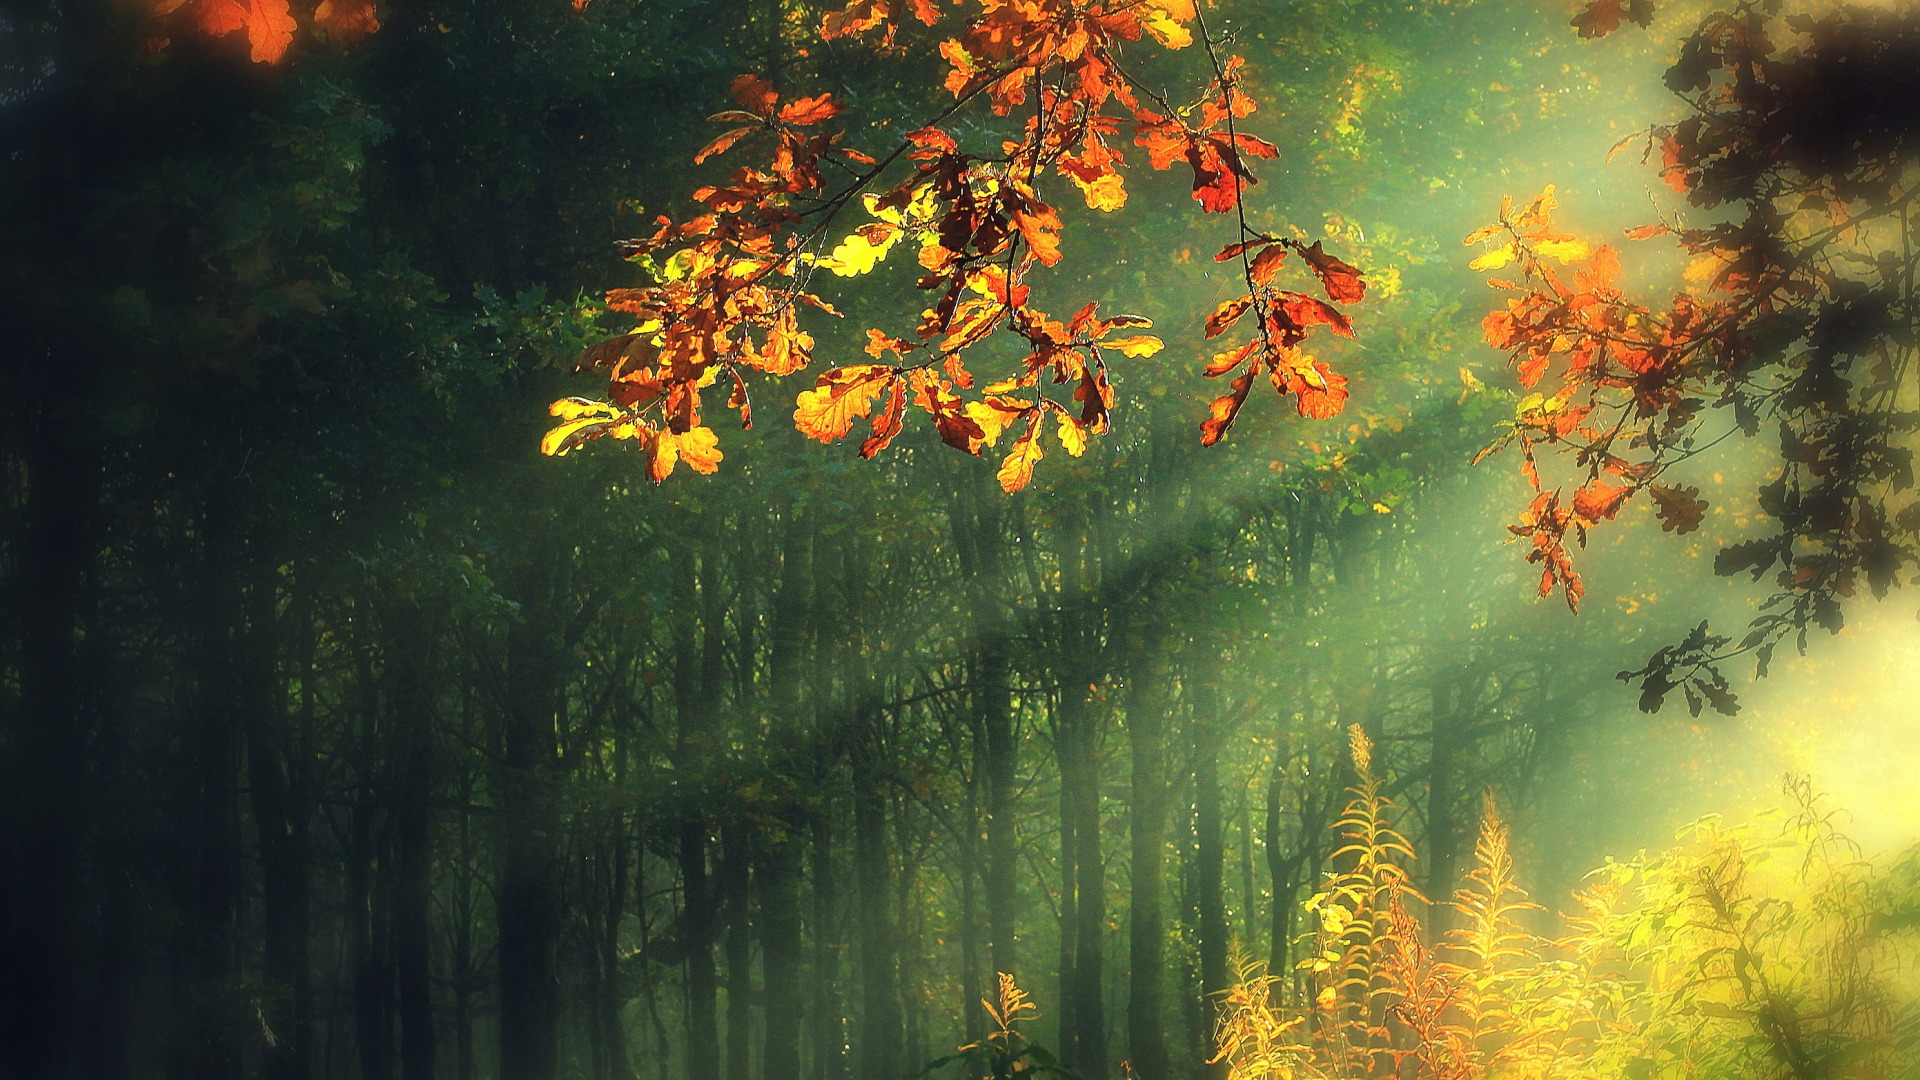 阳光照射秋天唯美高清壁纸图片 手机壁纸 优美图